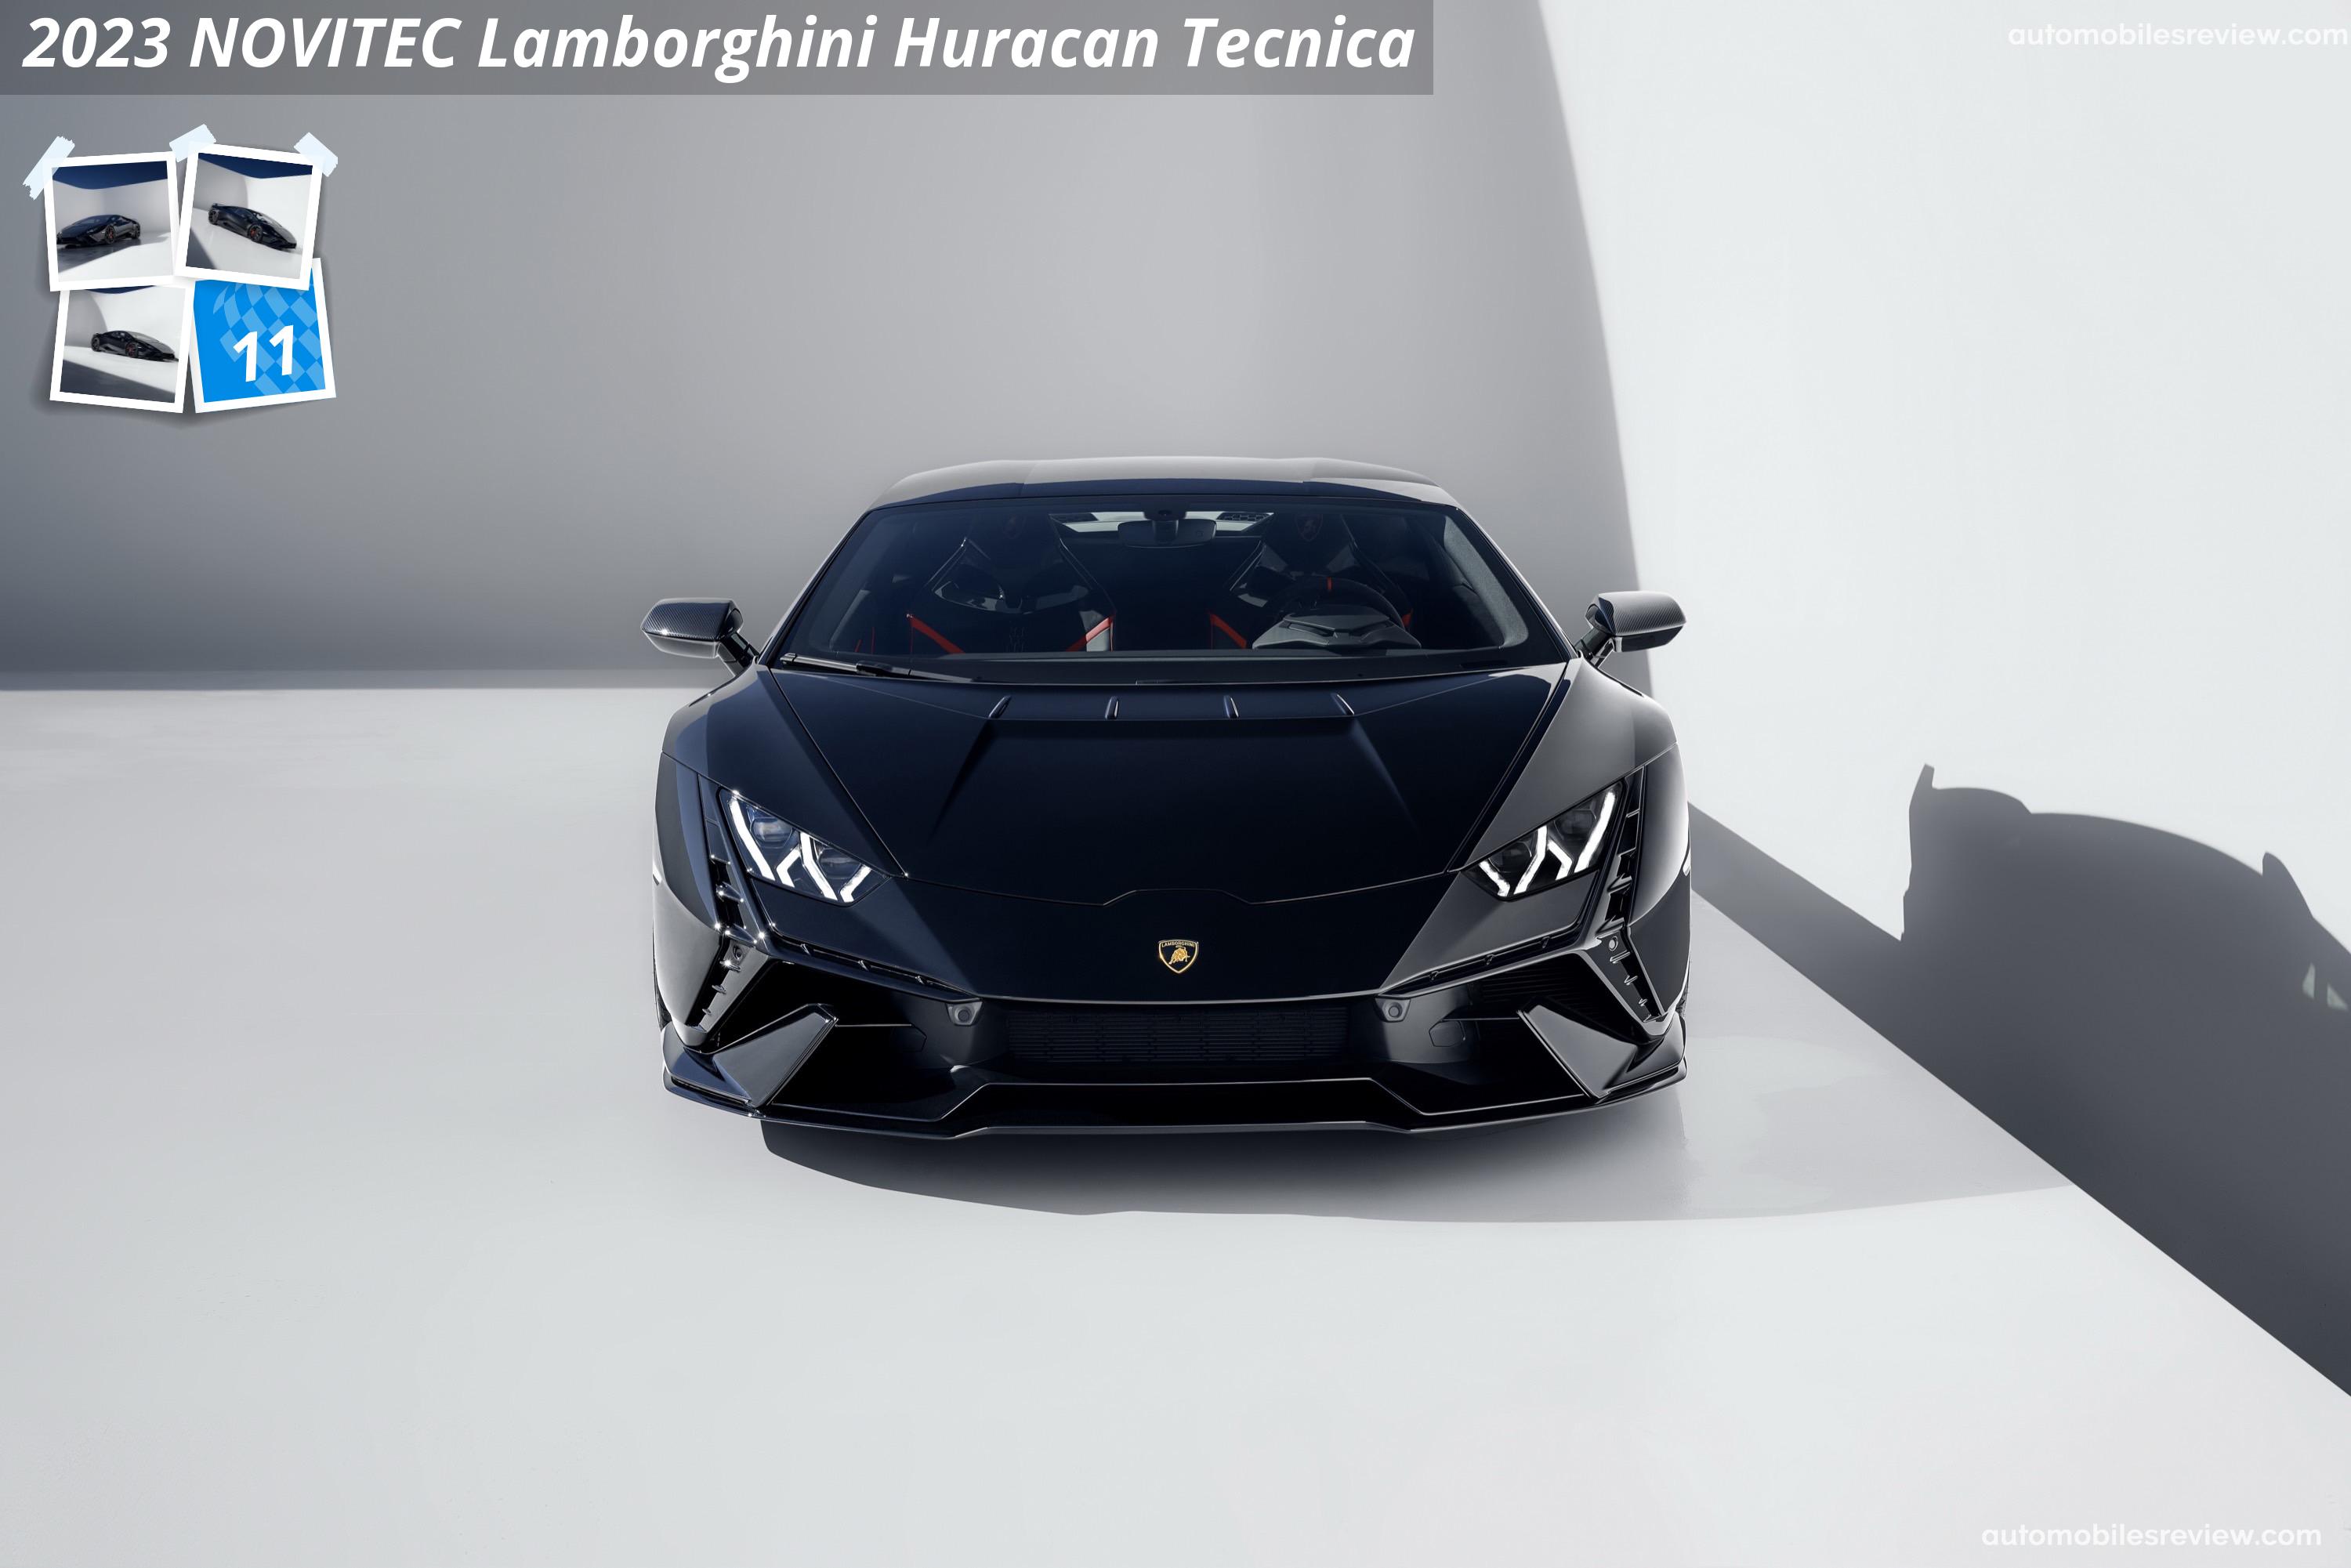 NOVITEC Lamborghini Huracan Tecnica (2023)